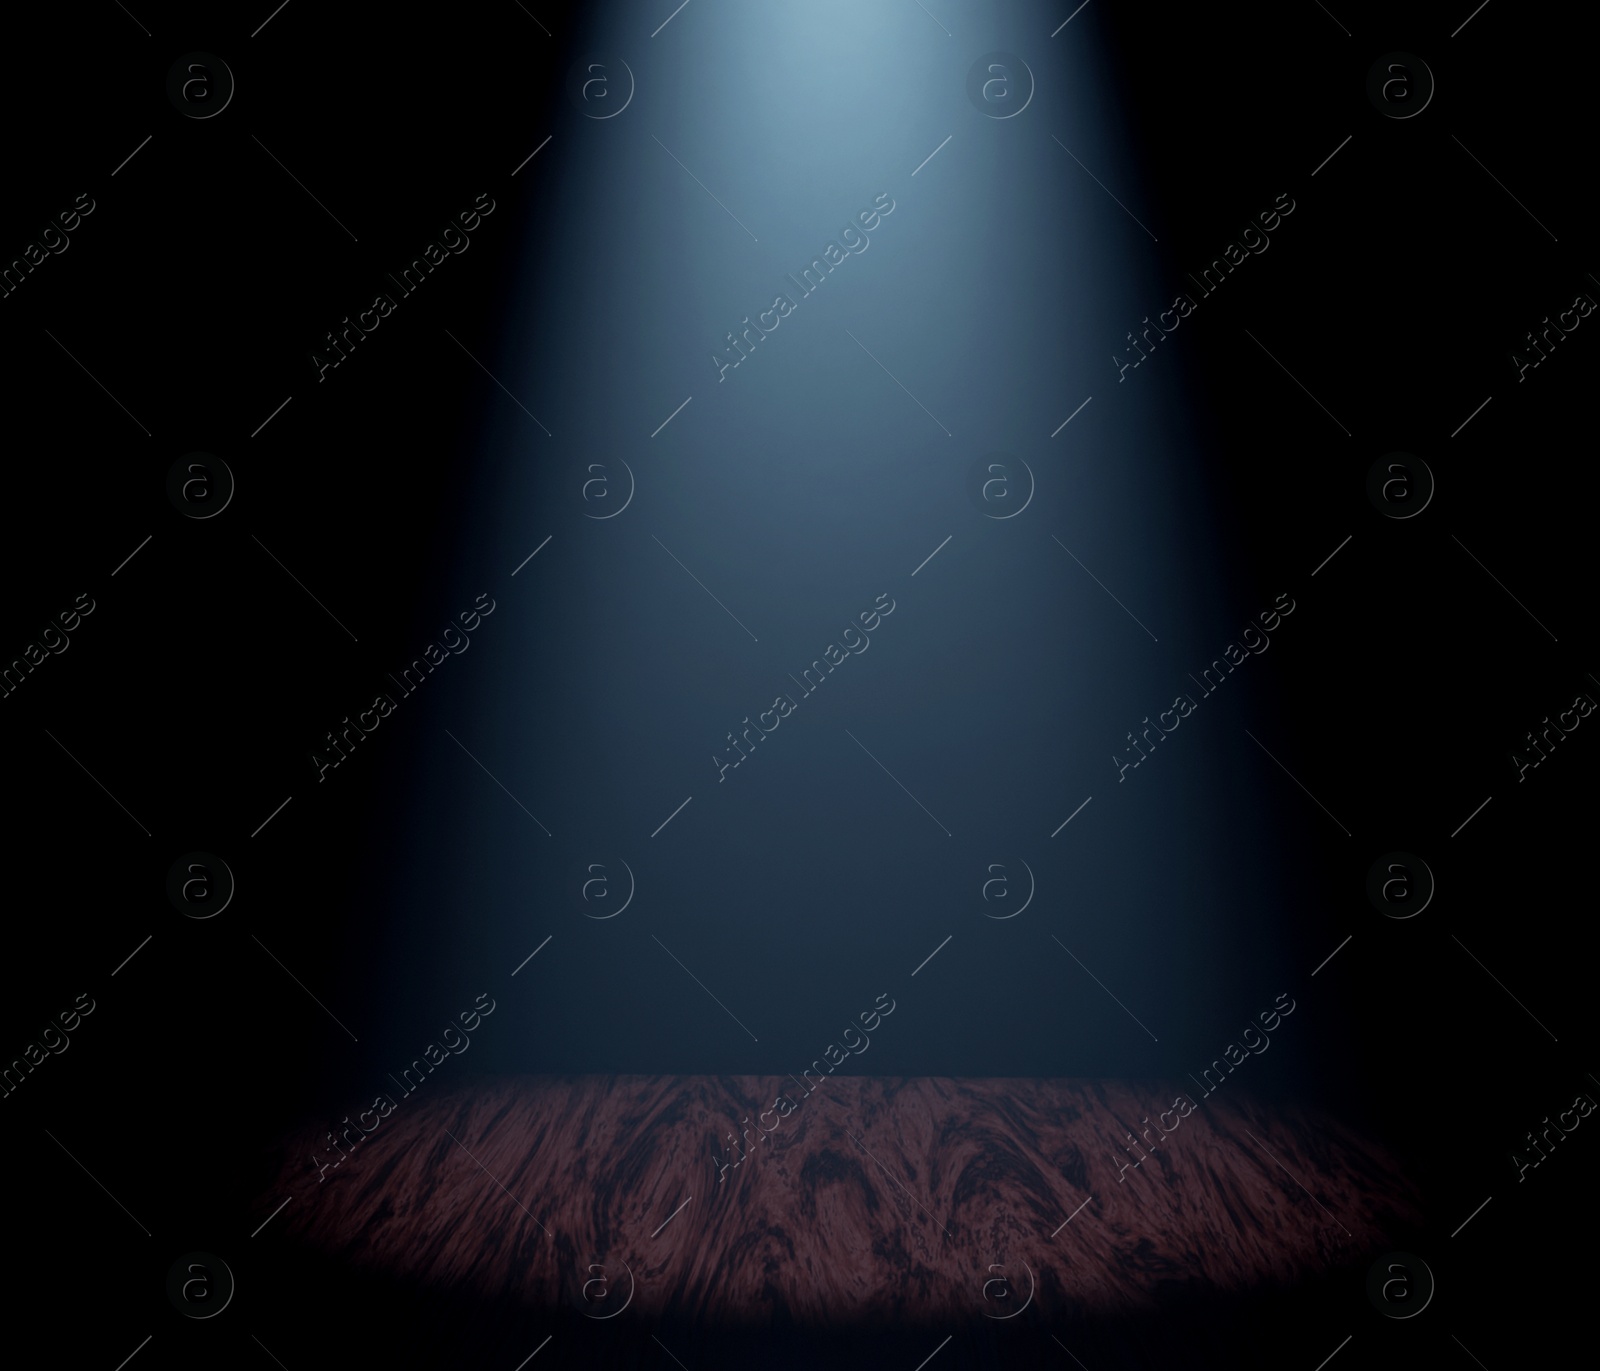 Image of Bright spotlight in dark room. Performance equipment